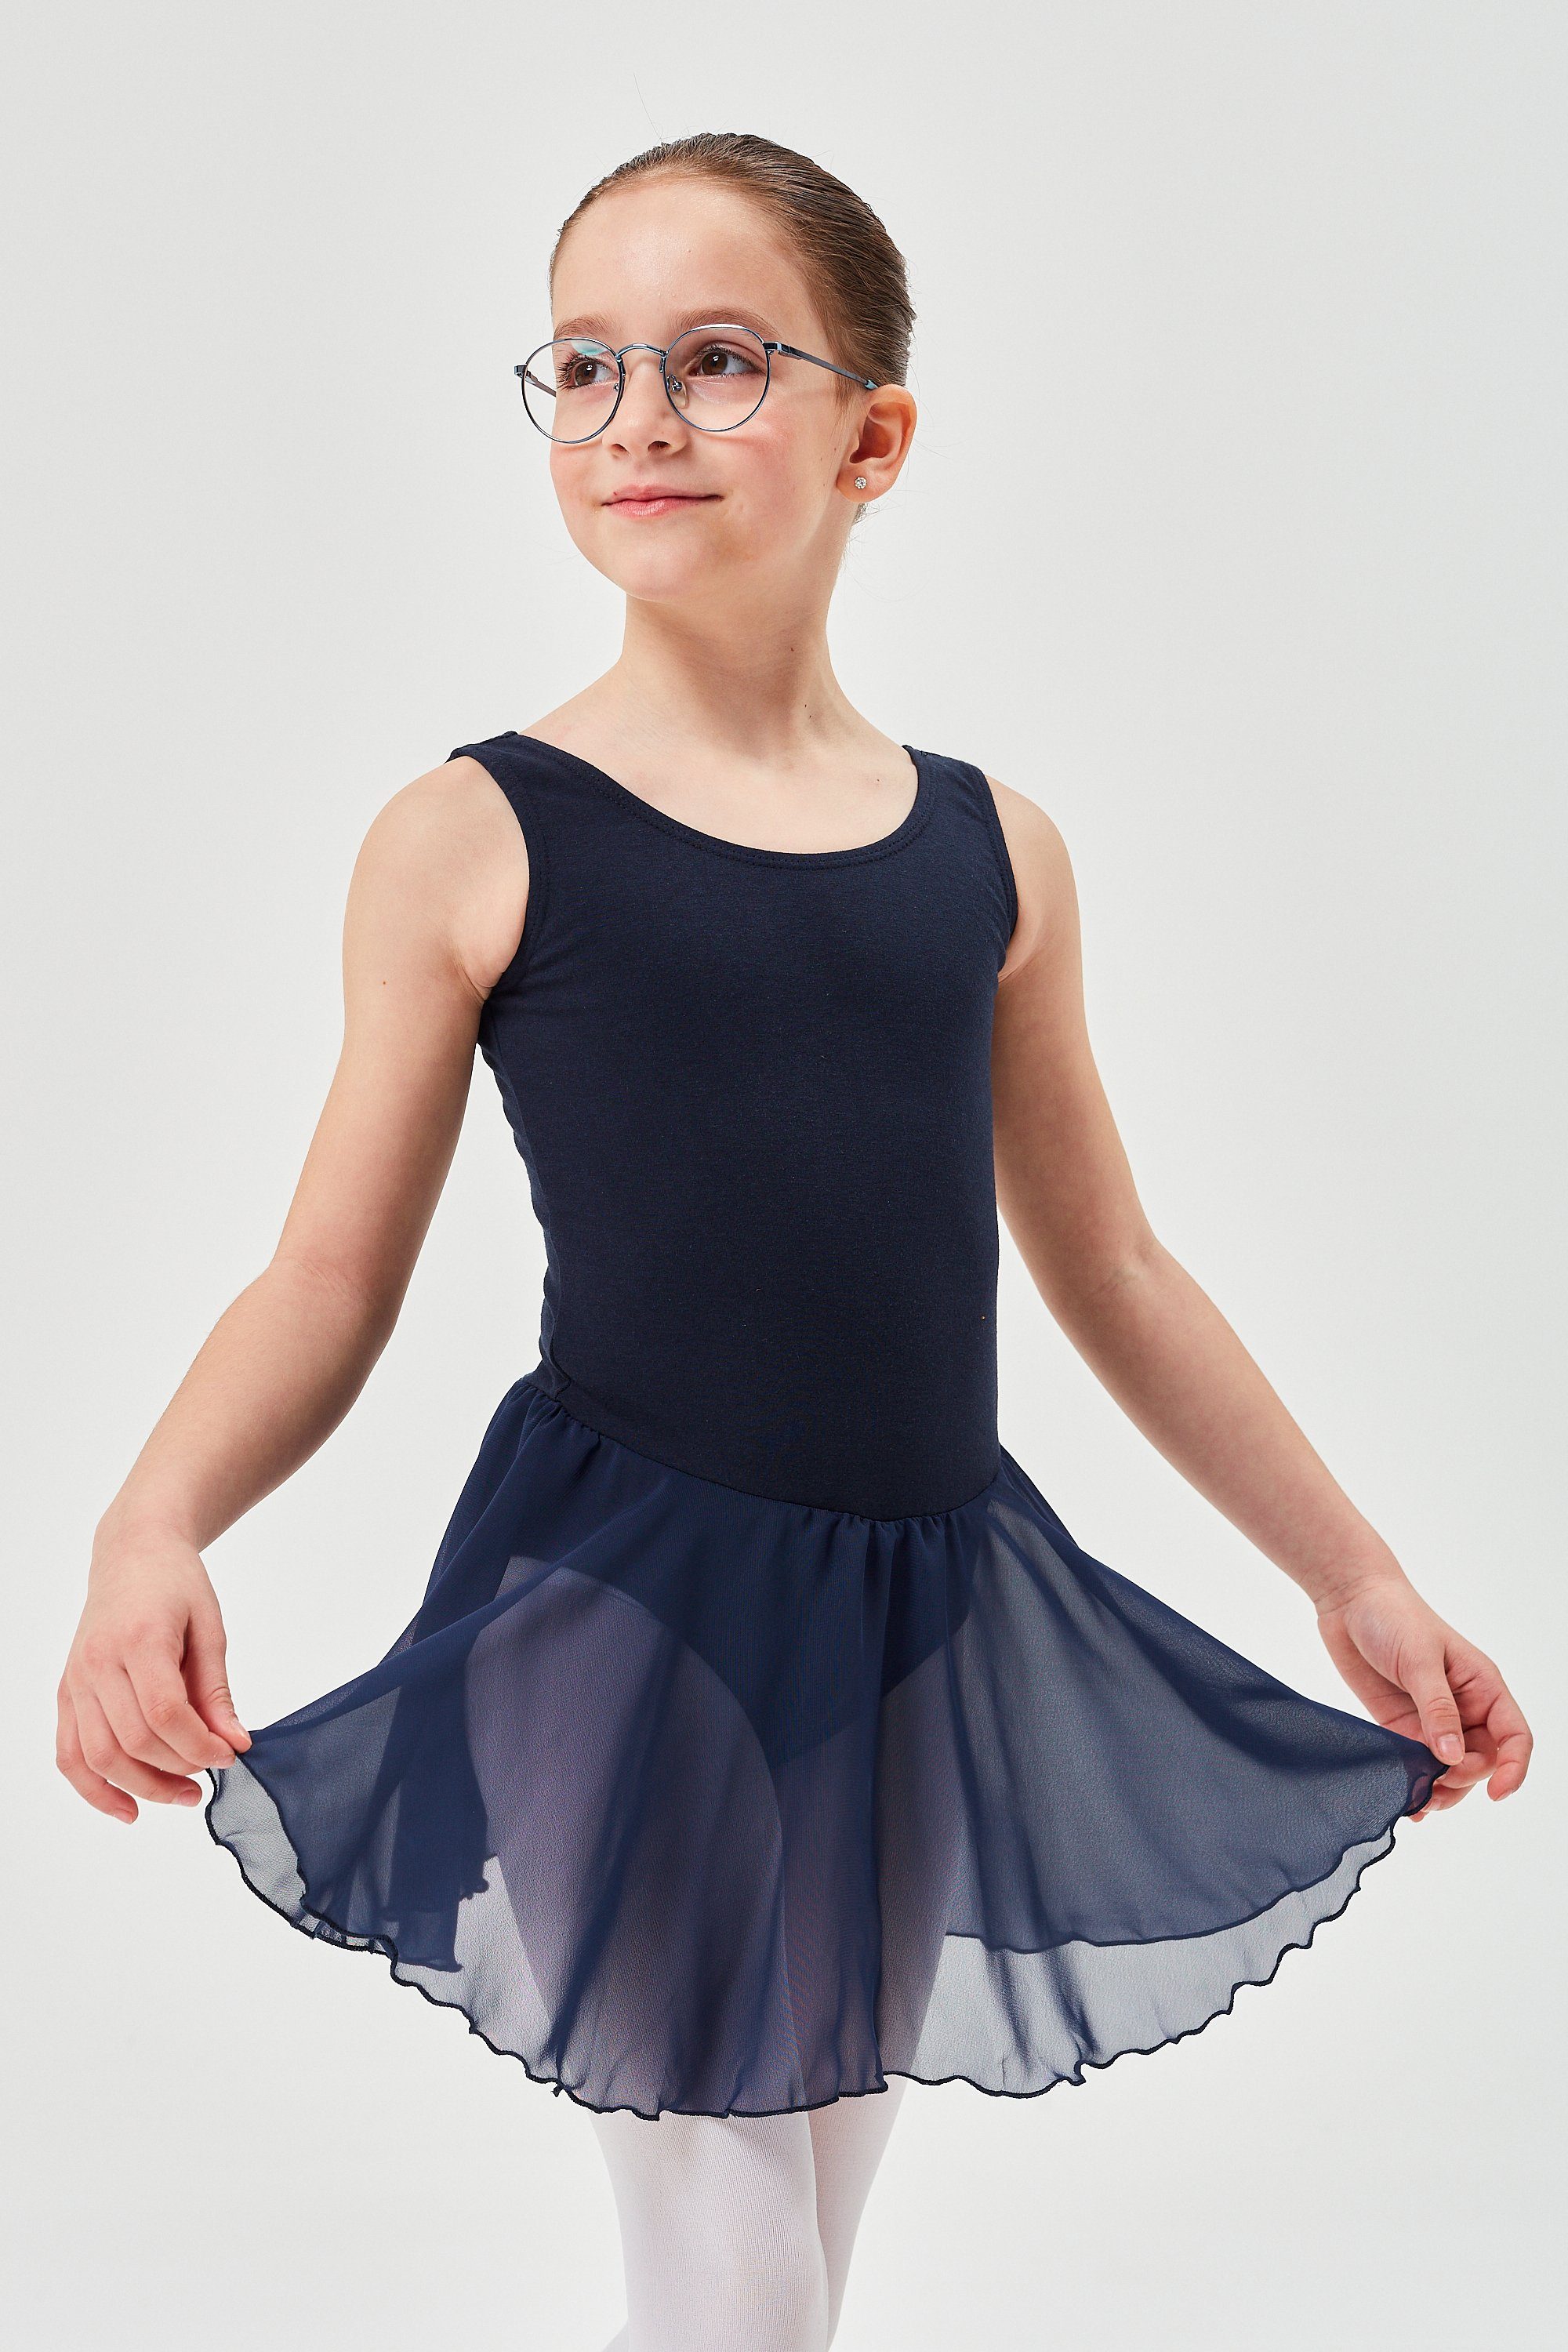 tanzmuster Chiffonkleid Ballett Trikot Minnie mit Chiffon Röckchen Ballettkleid für Mädchen aus wunderbar weichem Baumwollmaterial marineblau